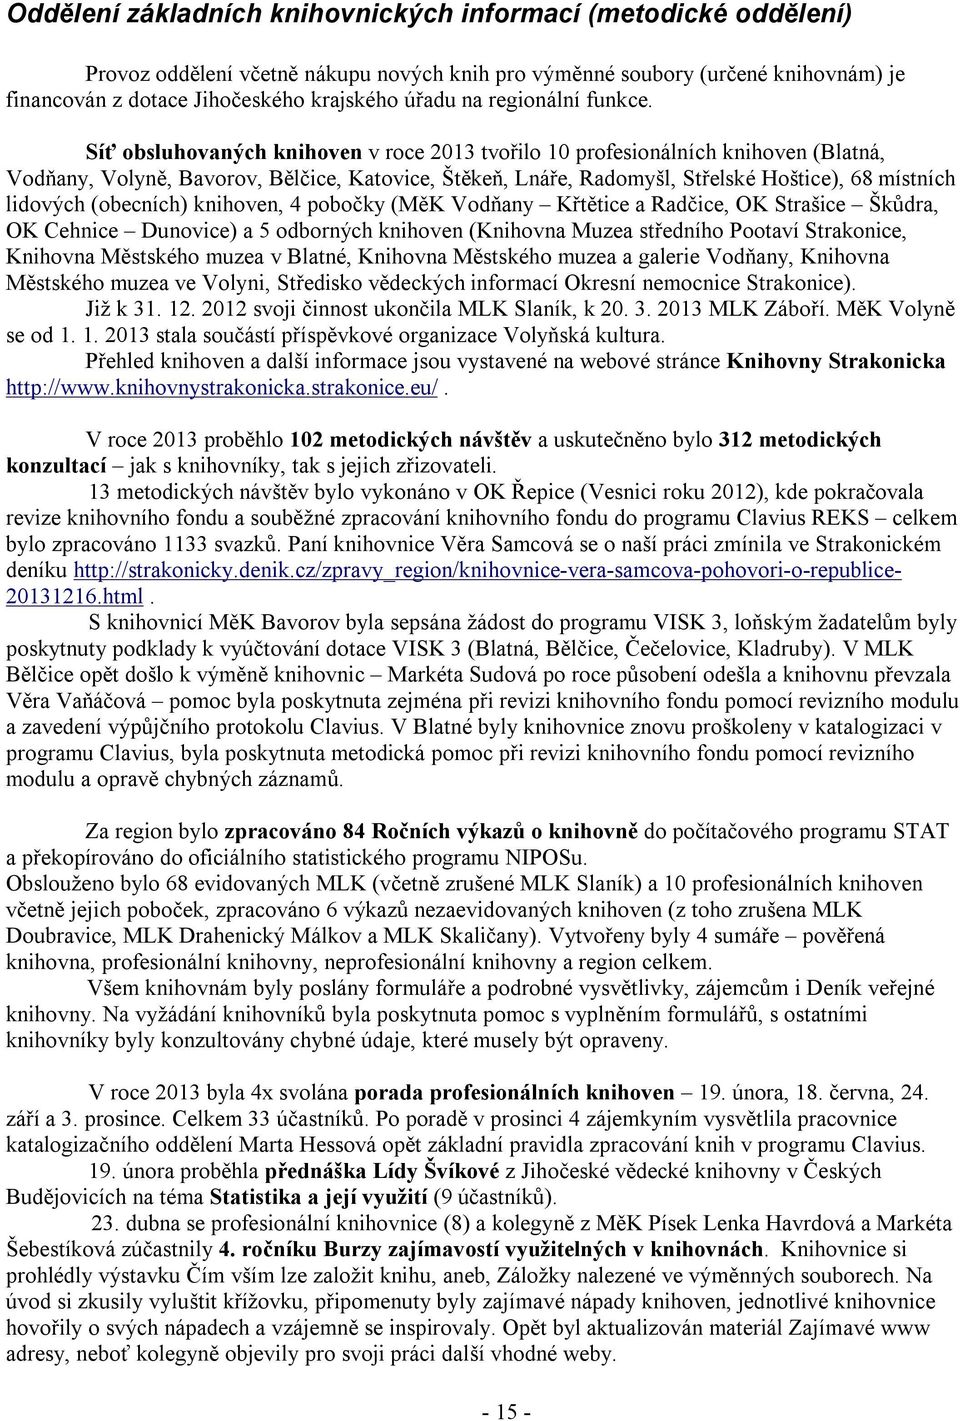 Síť obsluhovaných knihoven v roce 2013 tvořilo 10 profesionálních knihoven (Blatná, Vodňany, Volyně, Bavorov, Bělčice, Katovice, Štěkeň, Lnáře, Radomyšl, Střelské Hoštice), 68 místních lidových